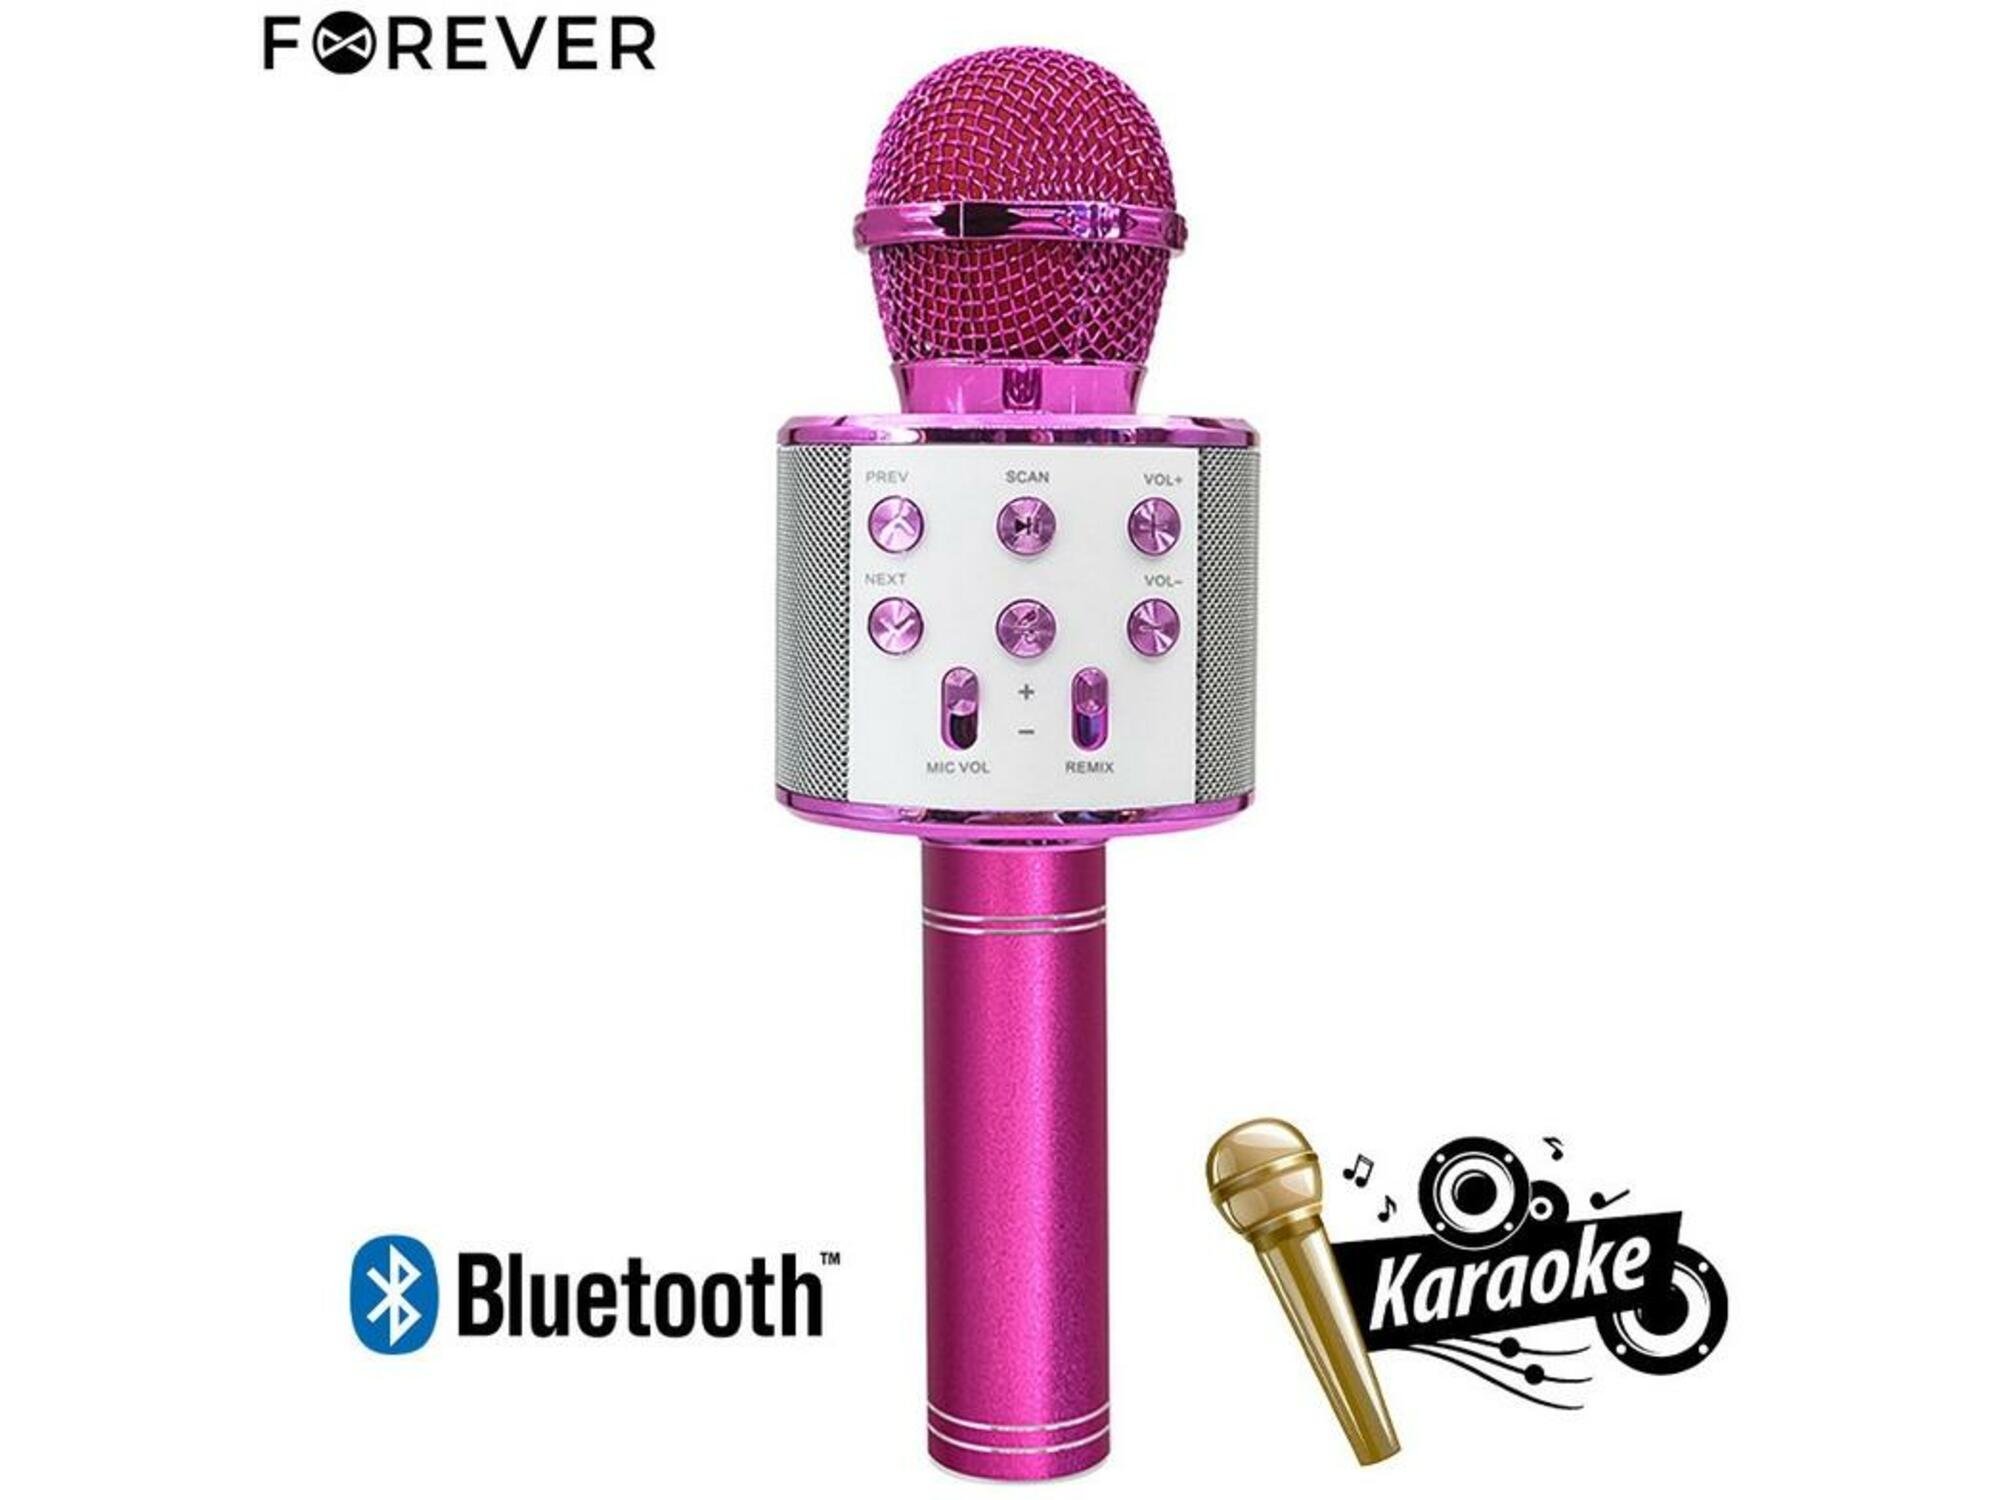 FOREVER Mikrofon & Zvočnik 3W, Bluetooth, USB, microSD, AUX-in, ECHO način, modulacija glasu, roza barve